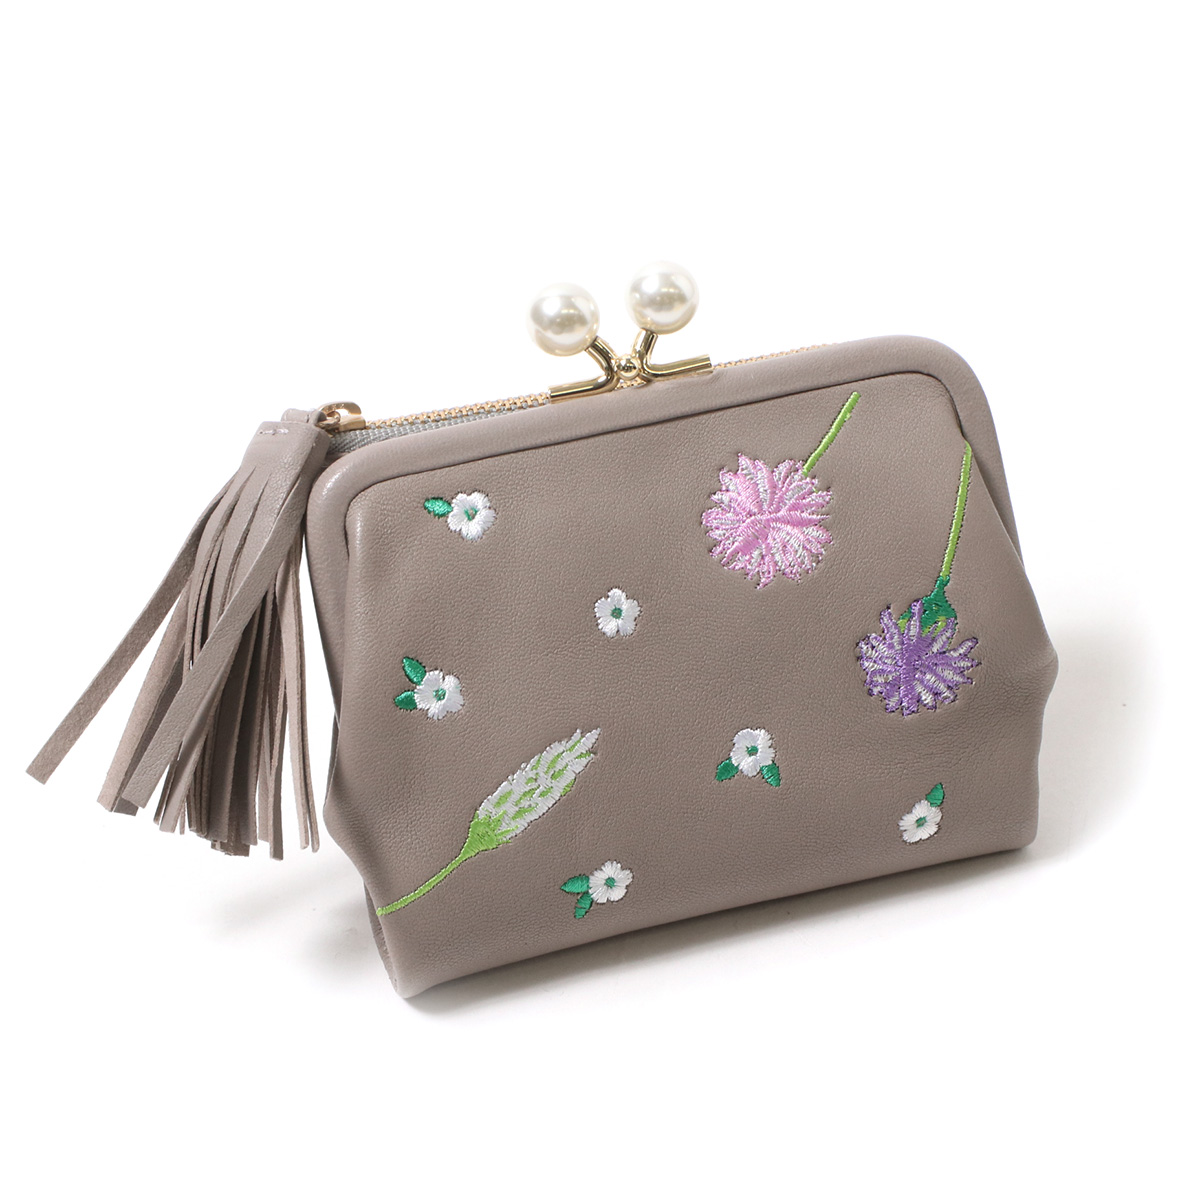 ペルケ perche 財布 二つ折り がま口 花柄 刺繍 レディース 本革